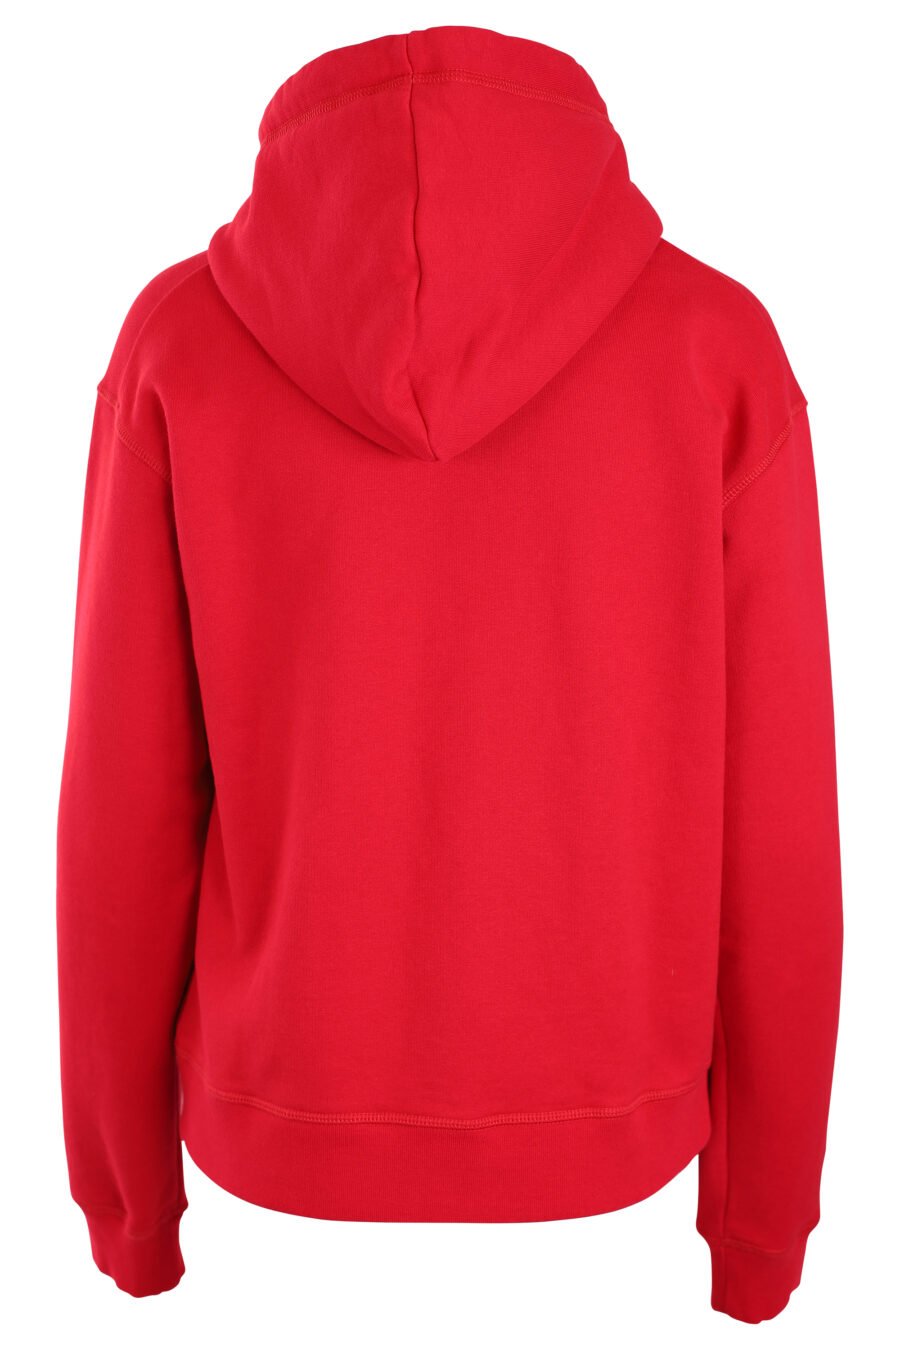 Camisola com capuz vermelha com logótipo "icon" branco - IMG 3303